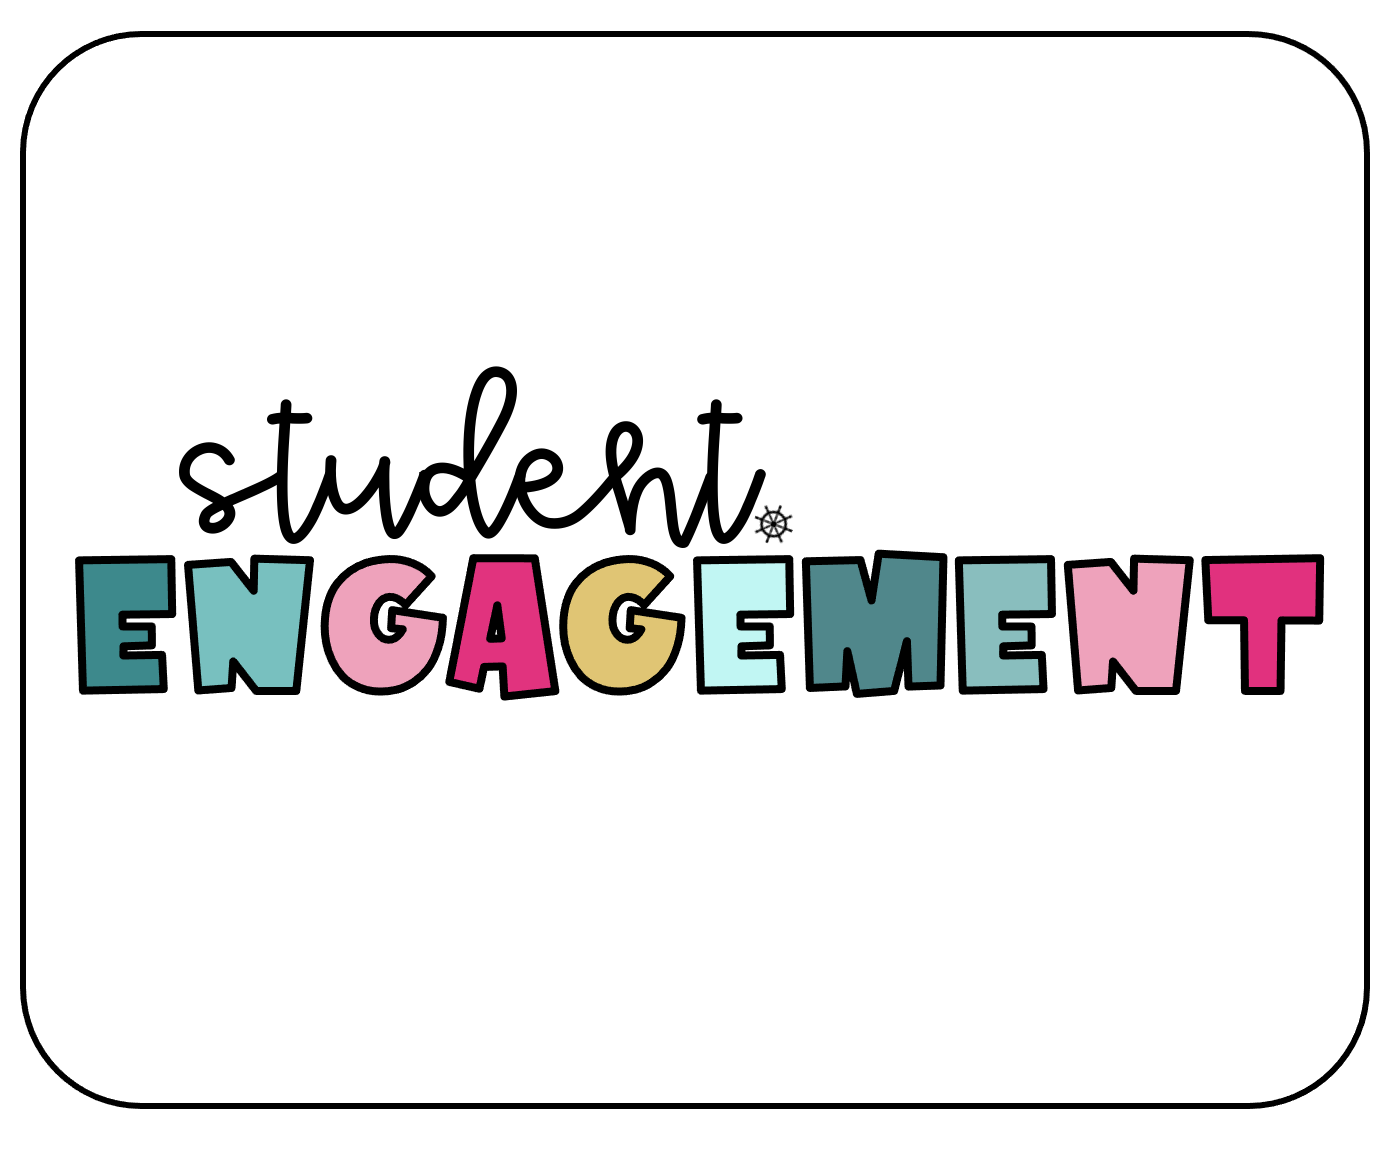 student engagement clip art